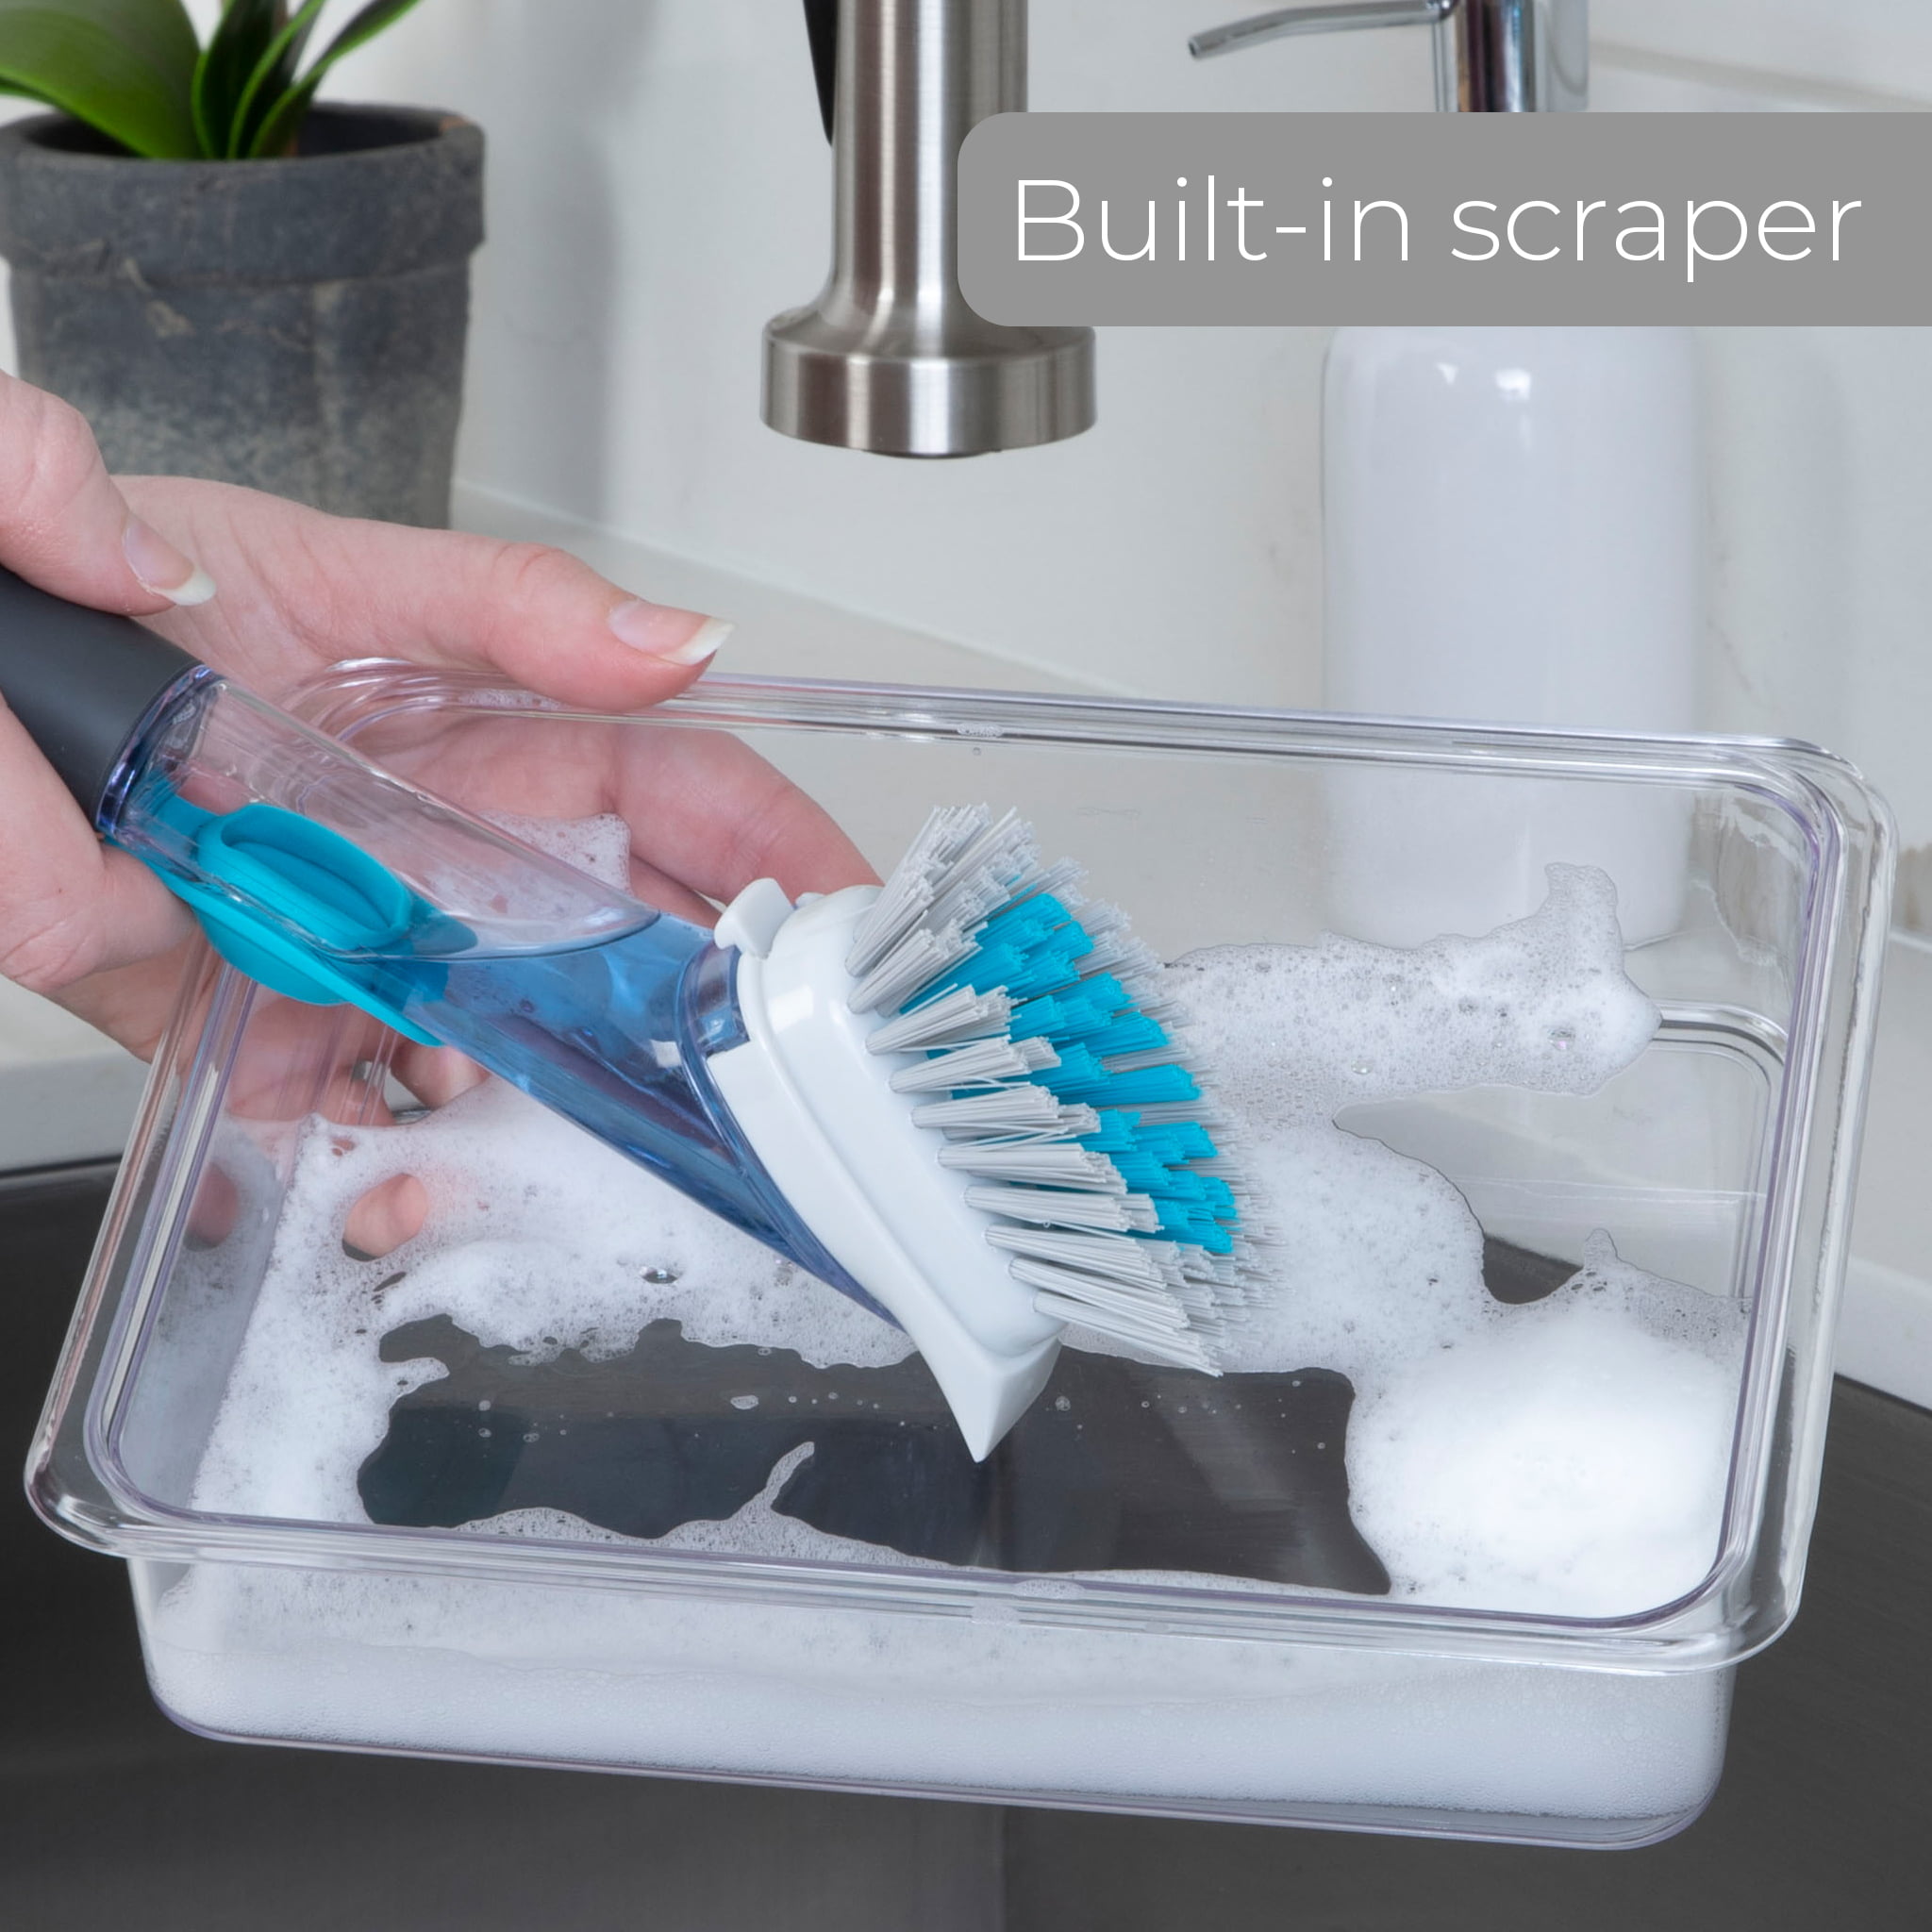 Smart Design Palm Brush & Stand - Contoured Non-Slip Grip - No-Leak Valve - Long Lasting Bristles - Odor Resistant - Dishwasher Safe - Cleaning Pots